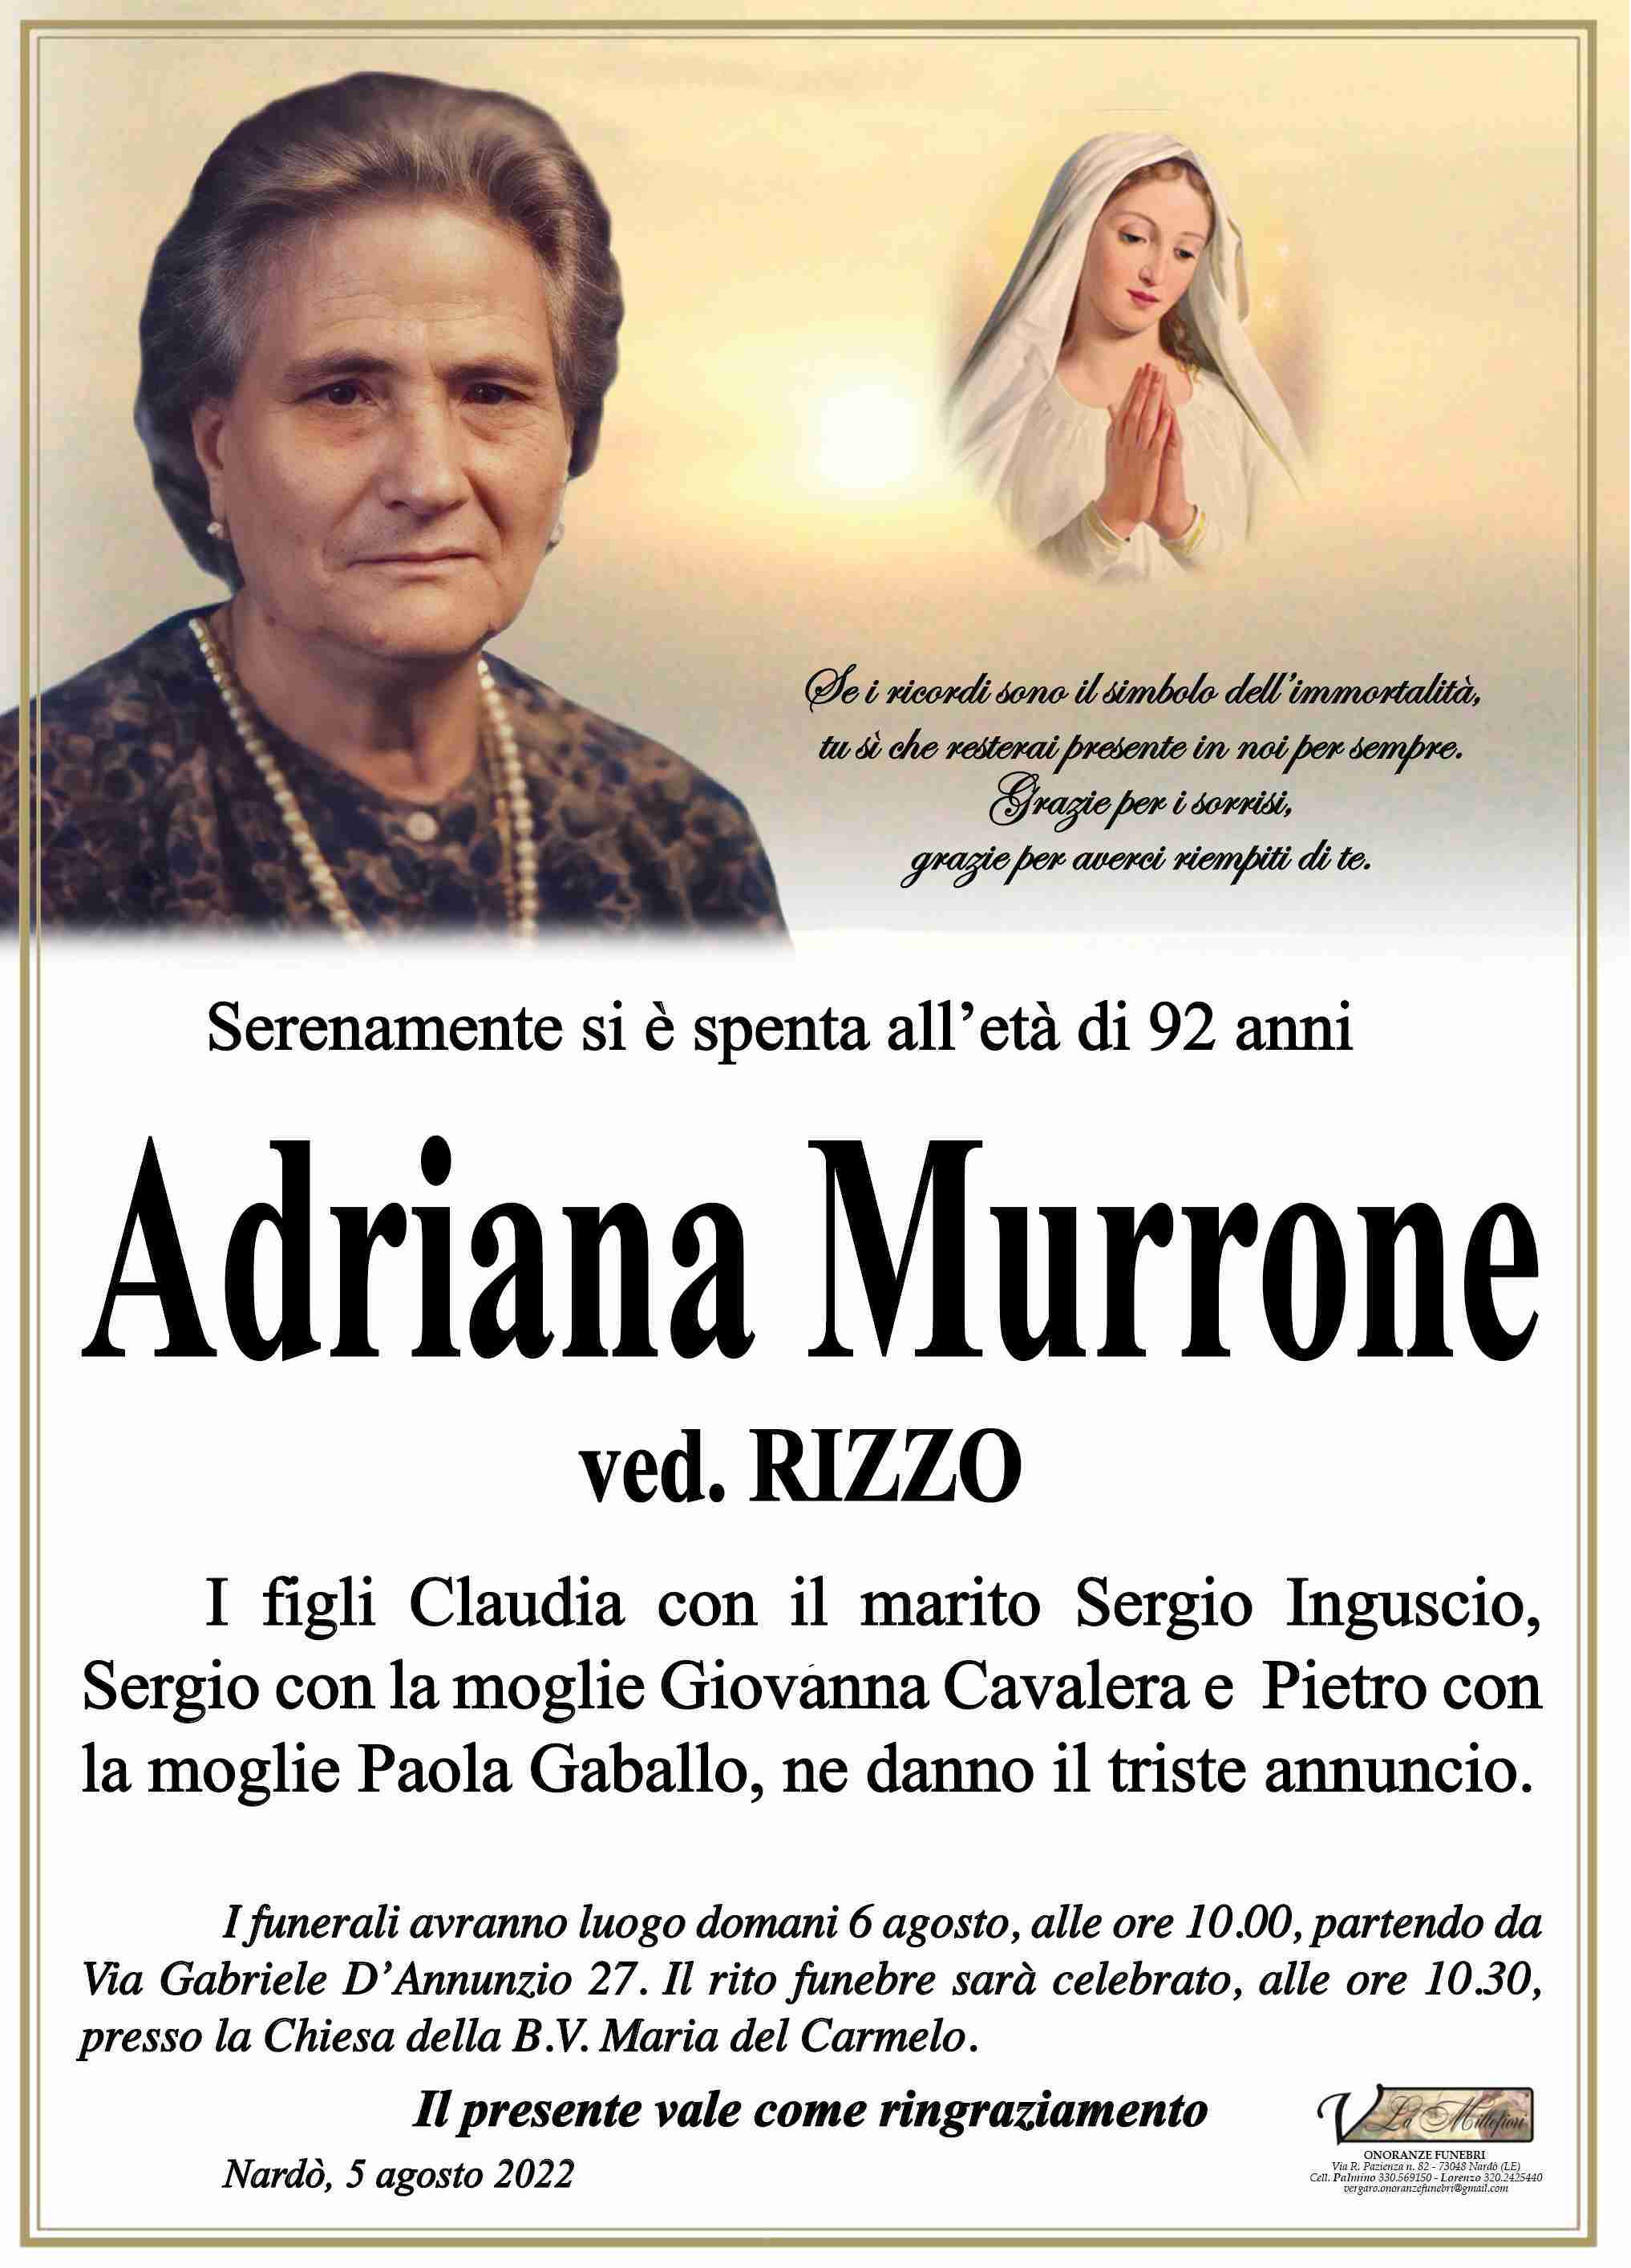 Adriana Murrone